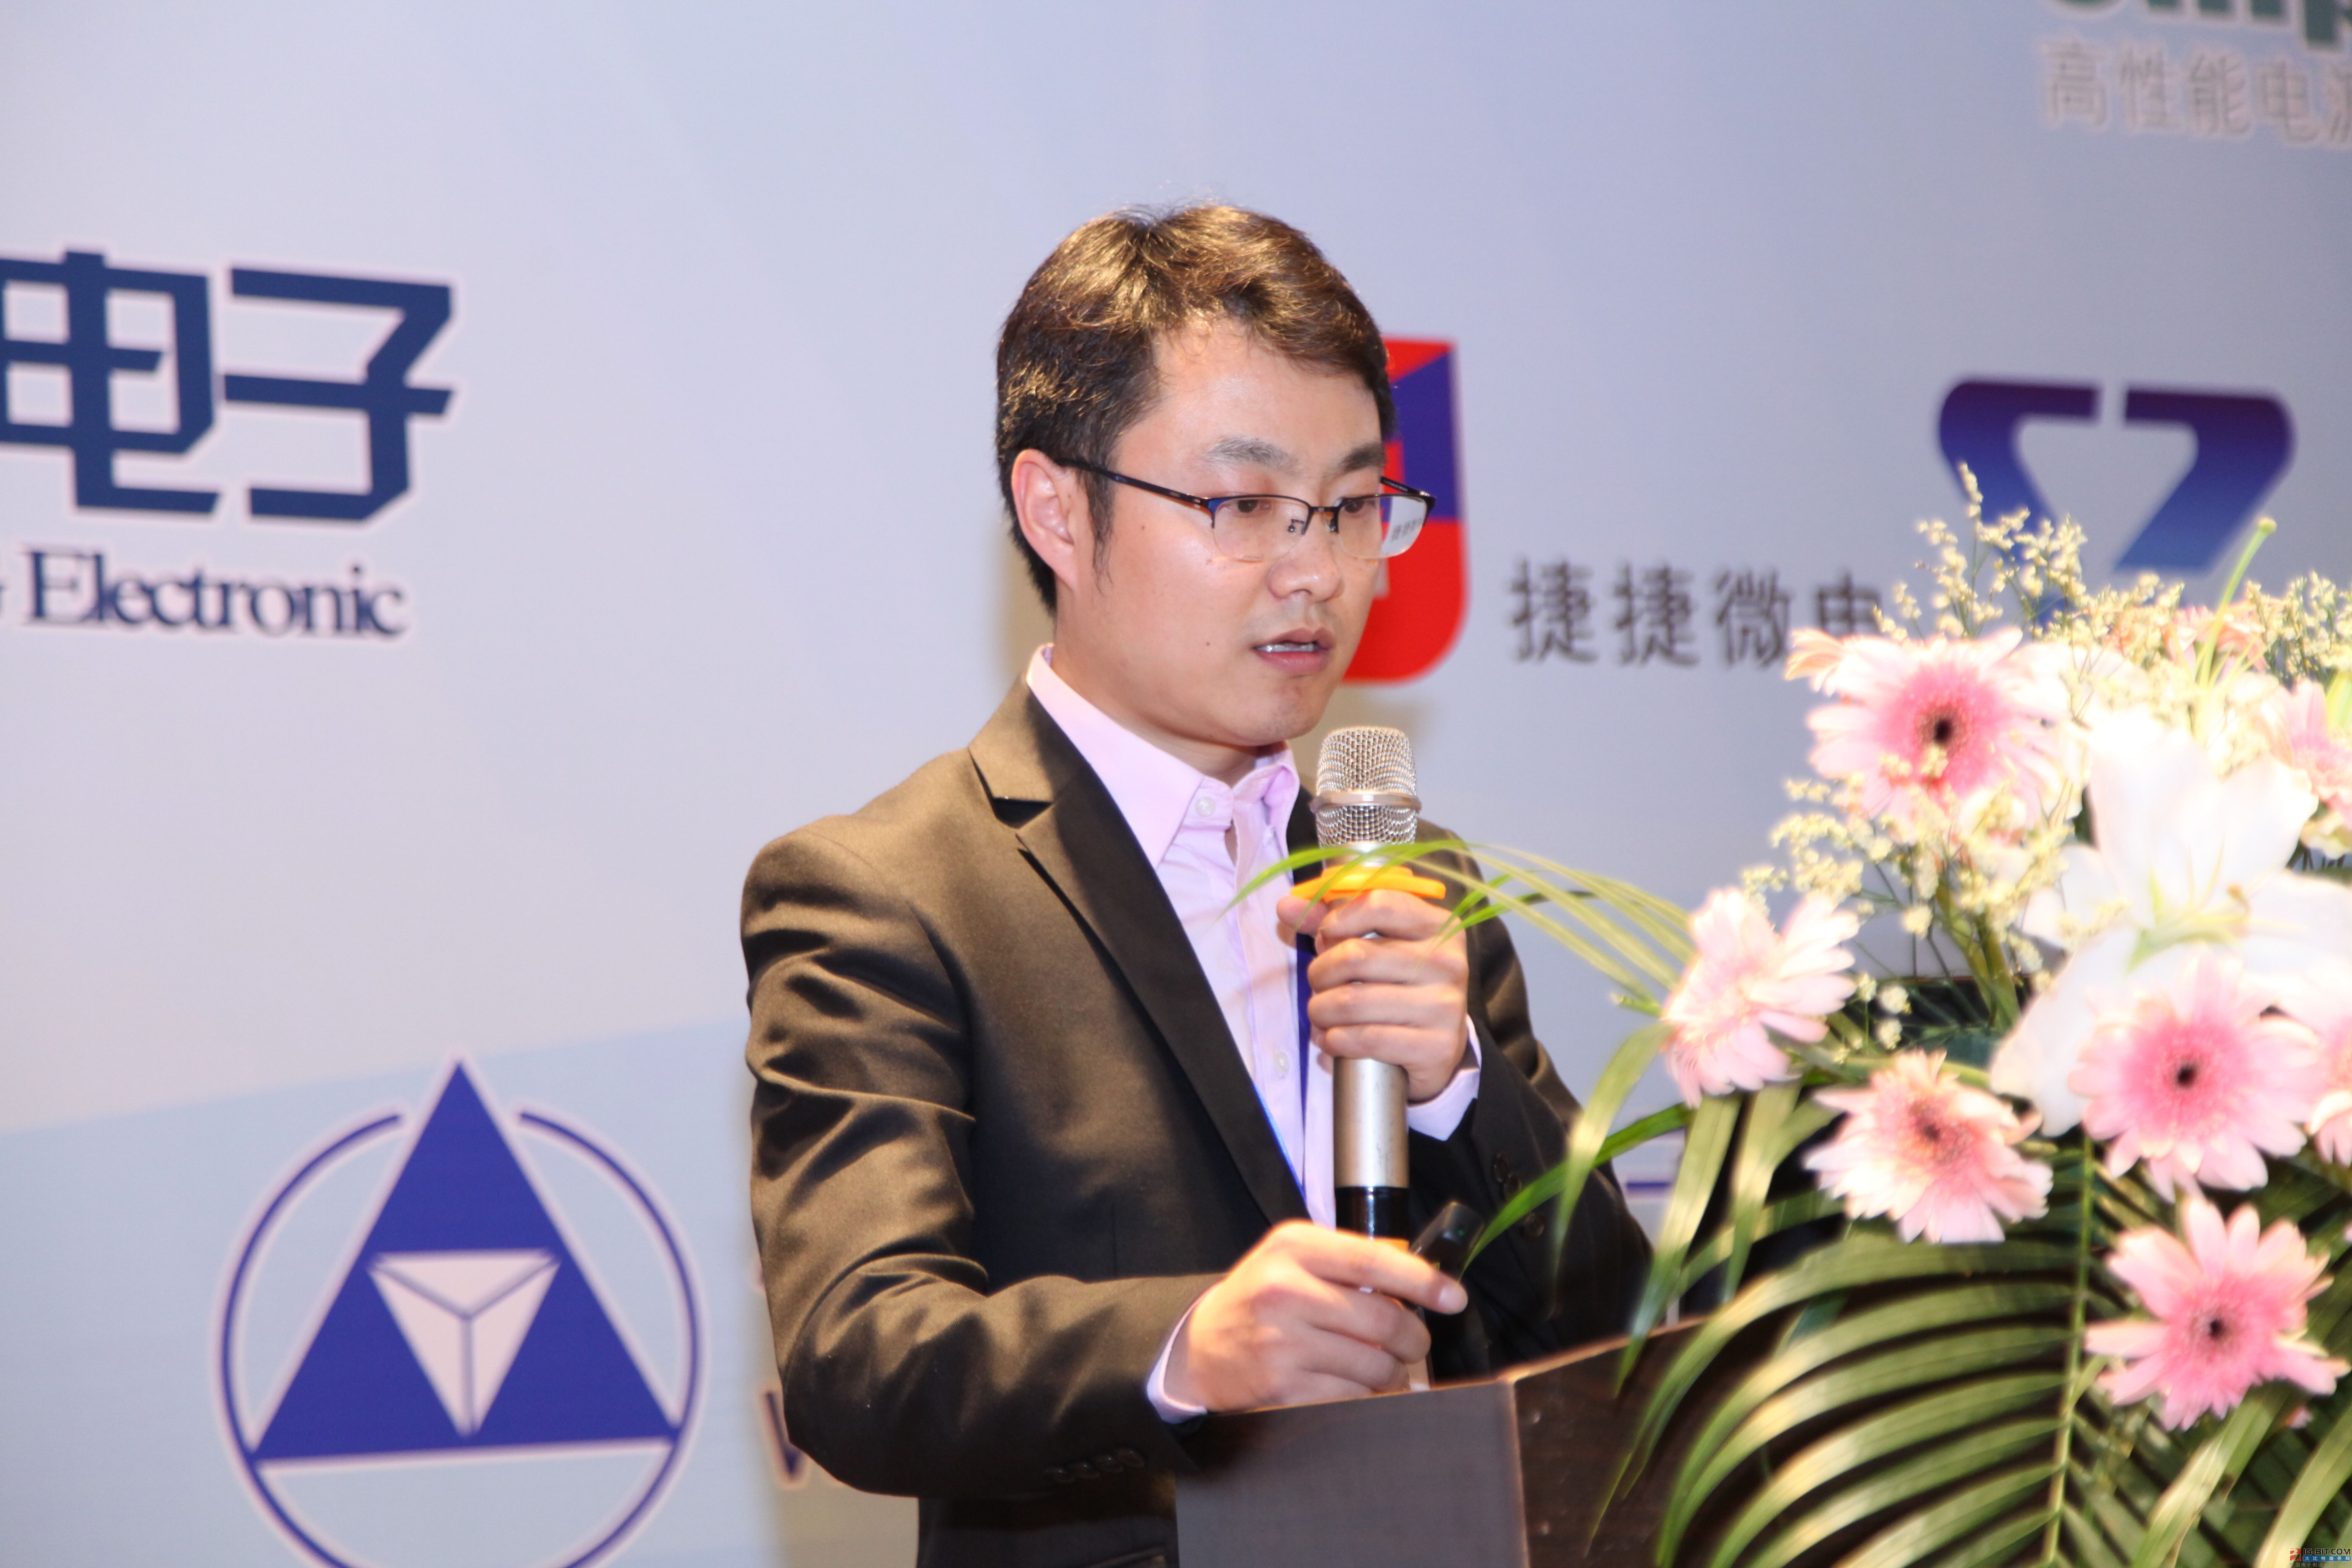 “2018'(苏州)电动工具关键元器件技术研讨会”